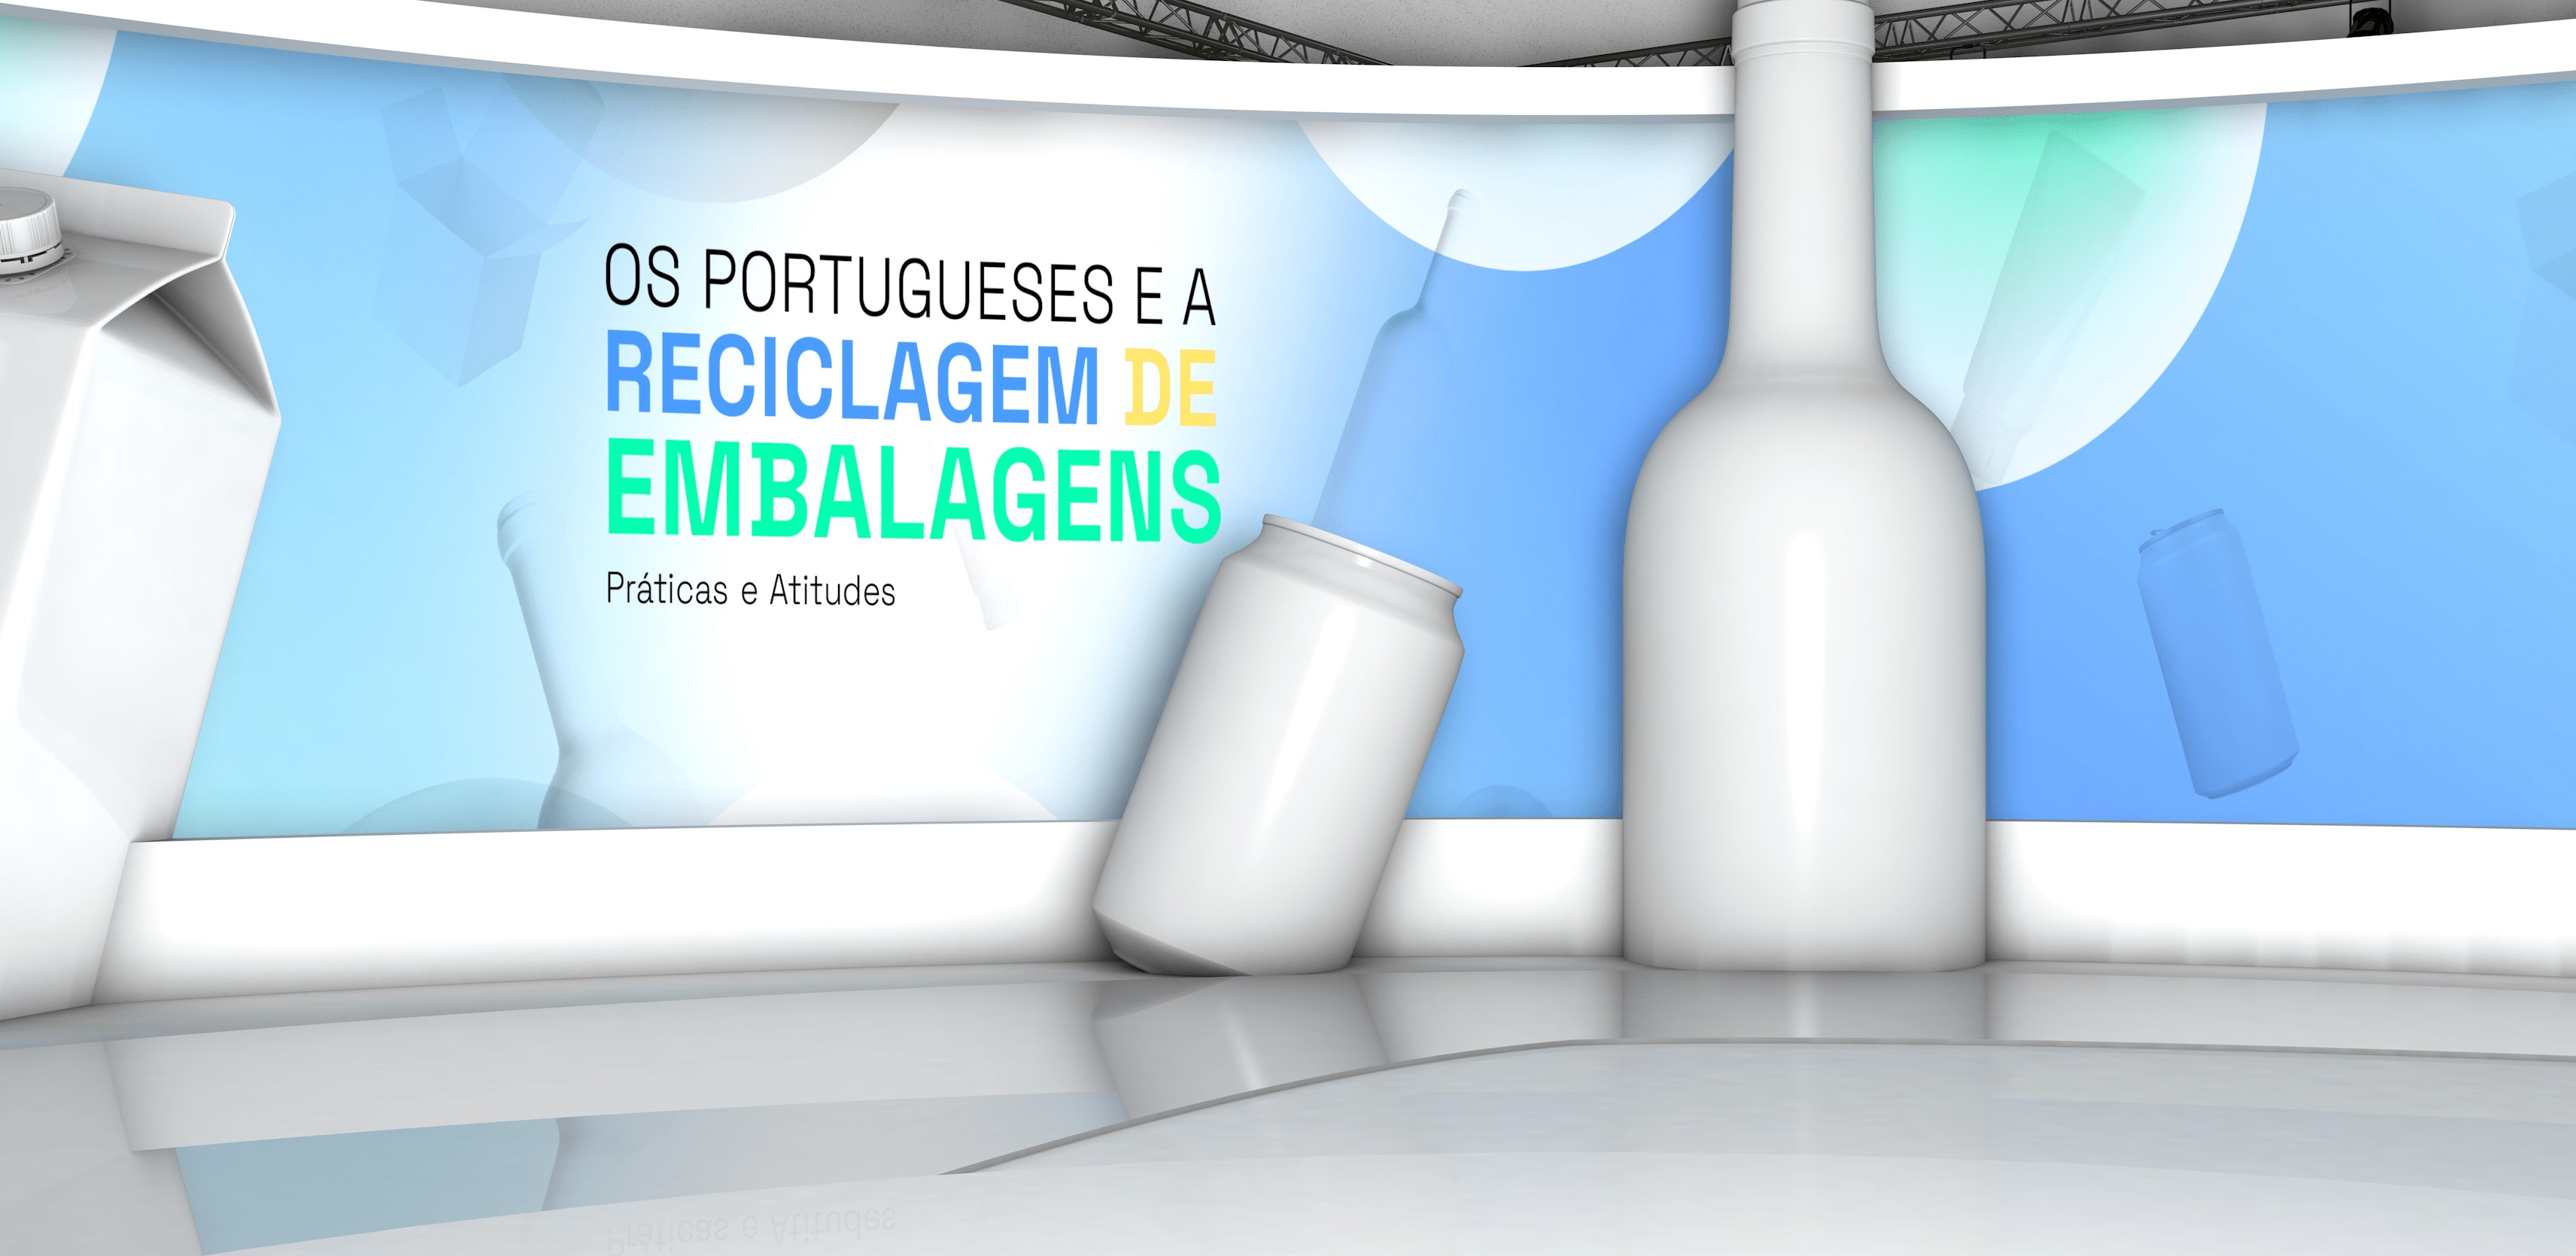 Portugueses disponíveis para aderir a novos métodos de gestão de embalagens